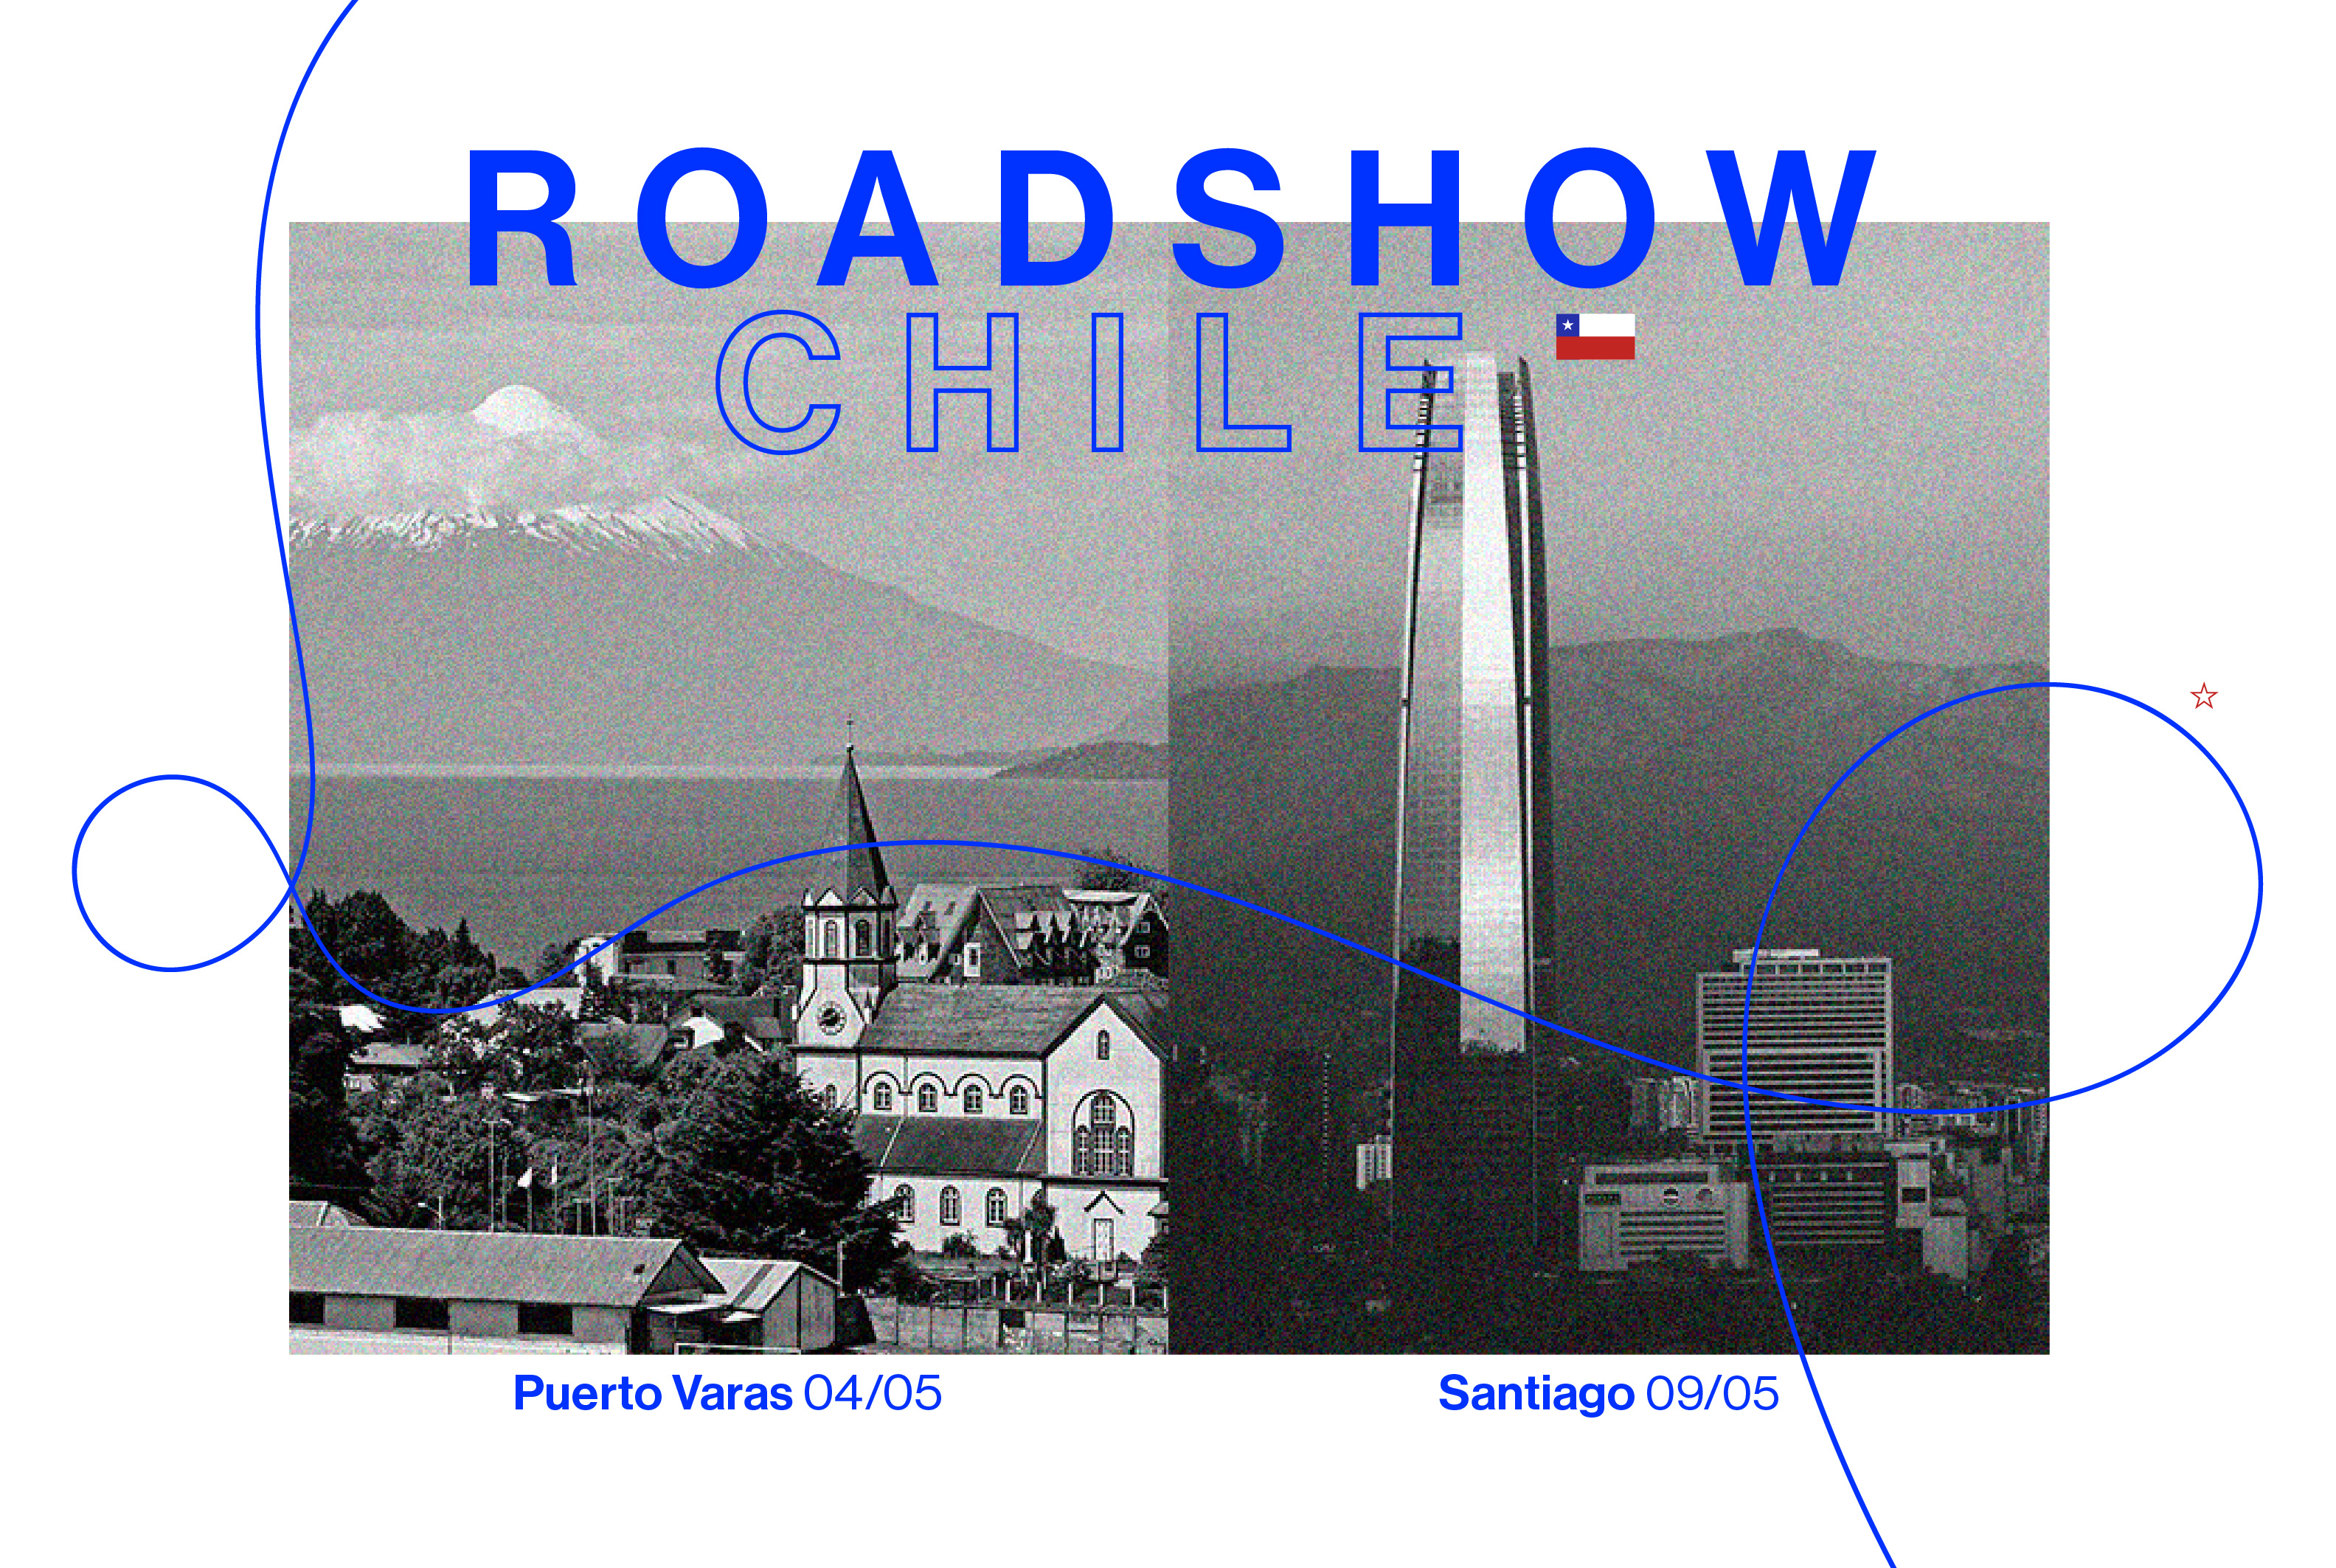 En mayo, Roadshow en Chile. Soluciones de Seguridad Inteligente